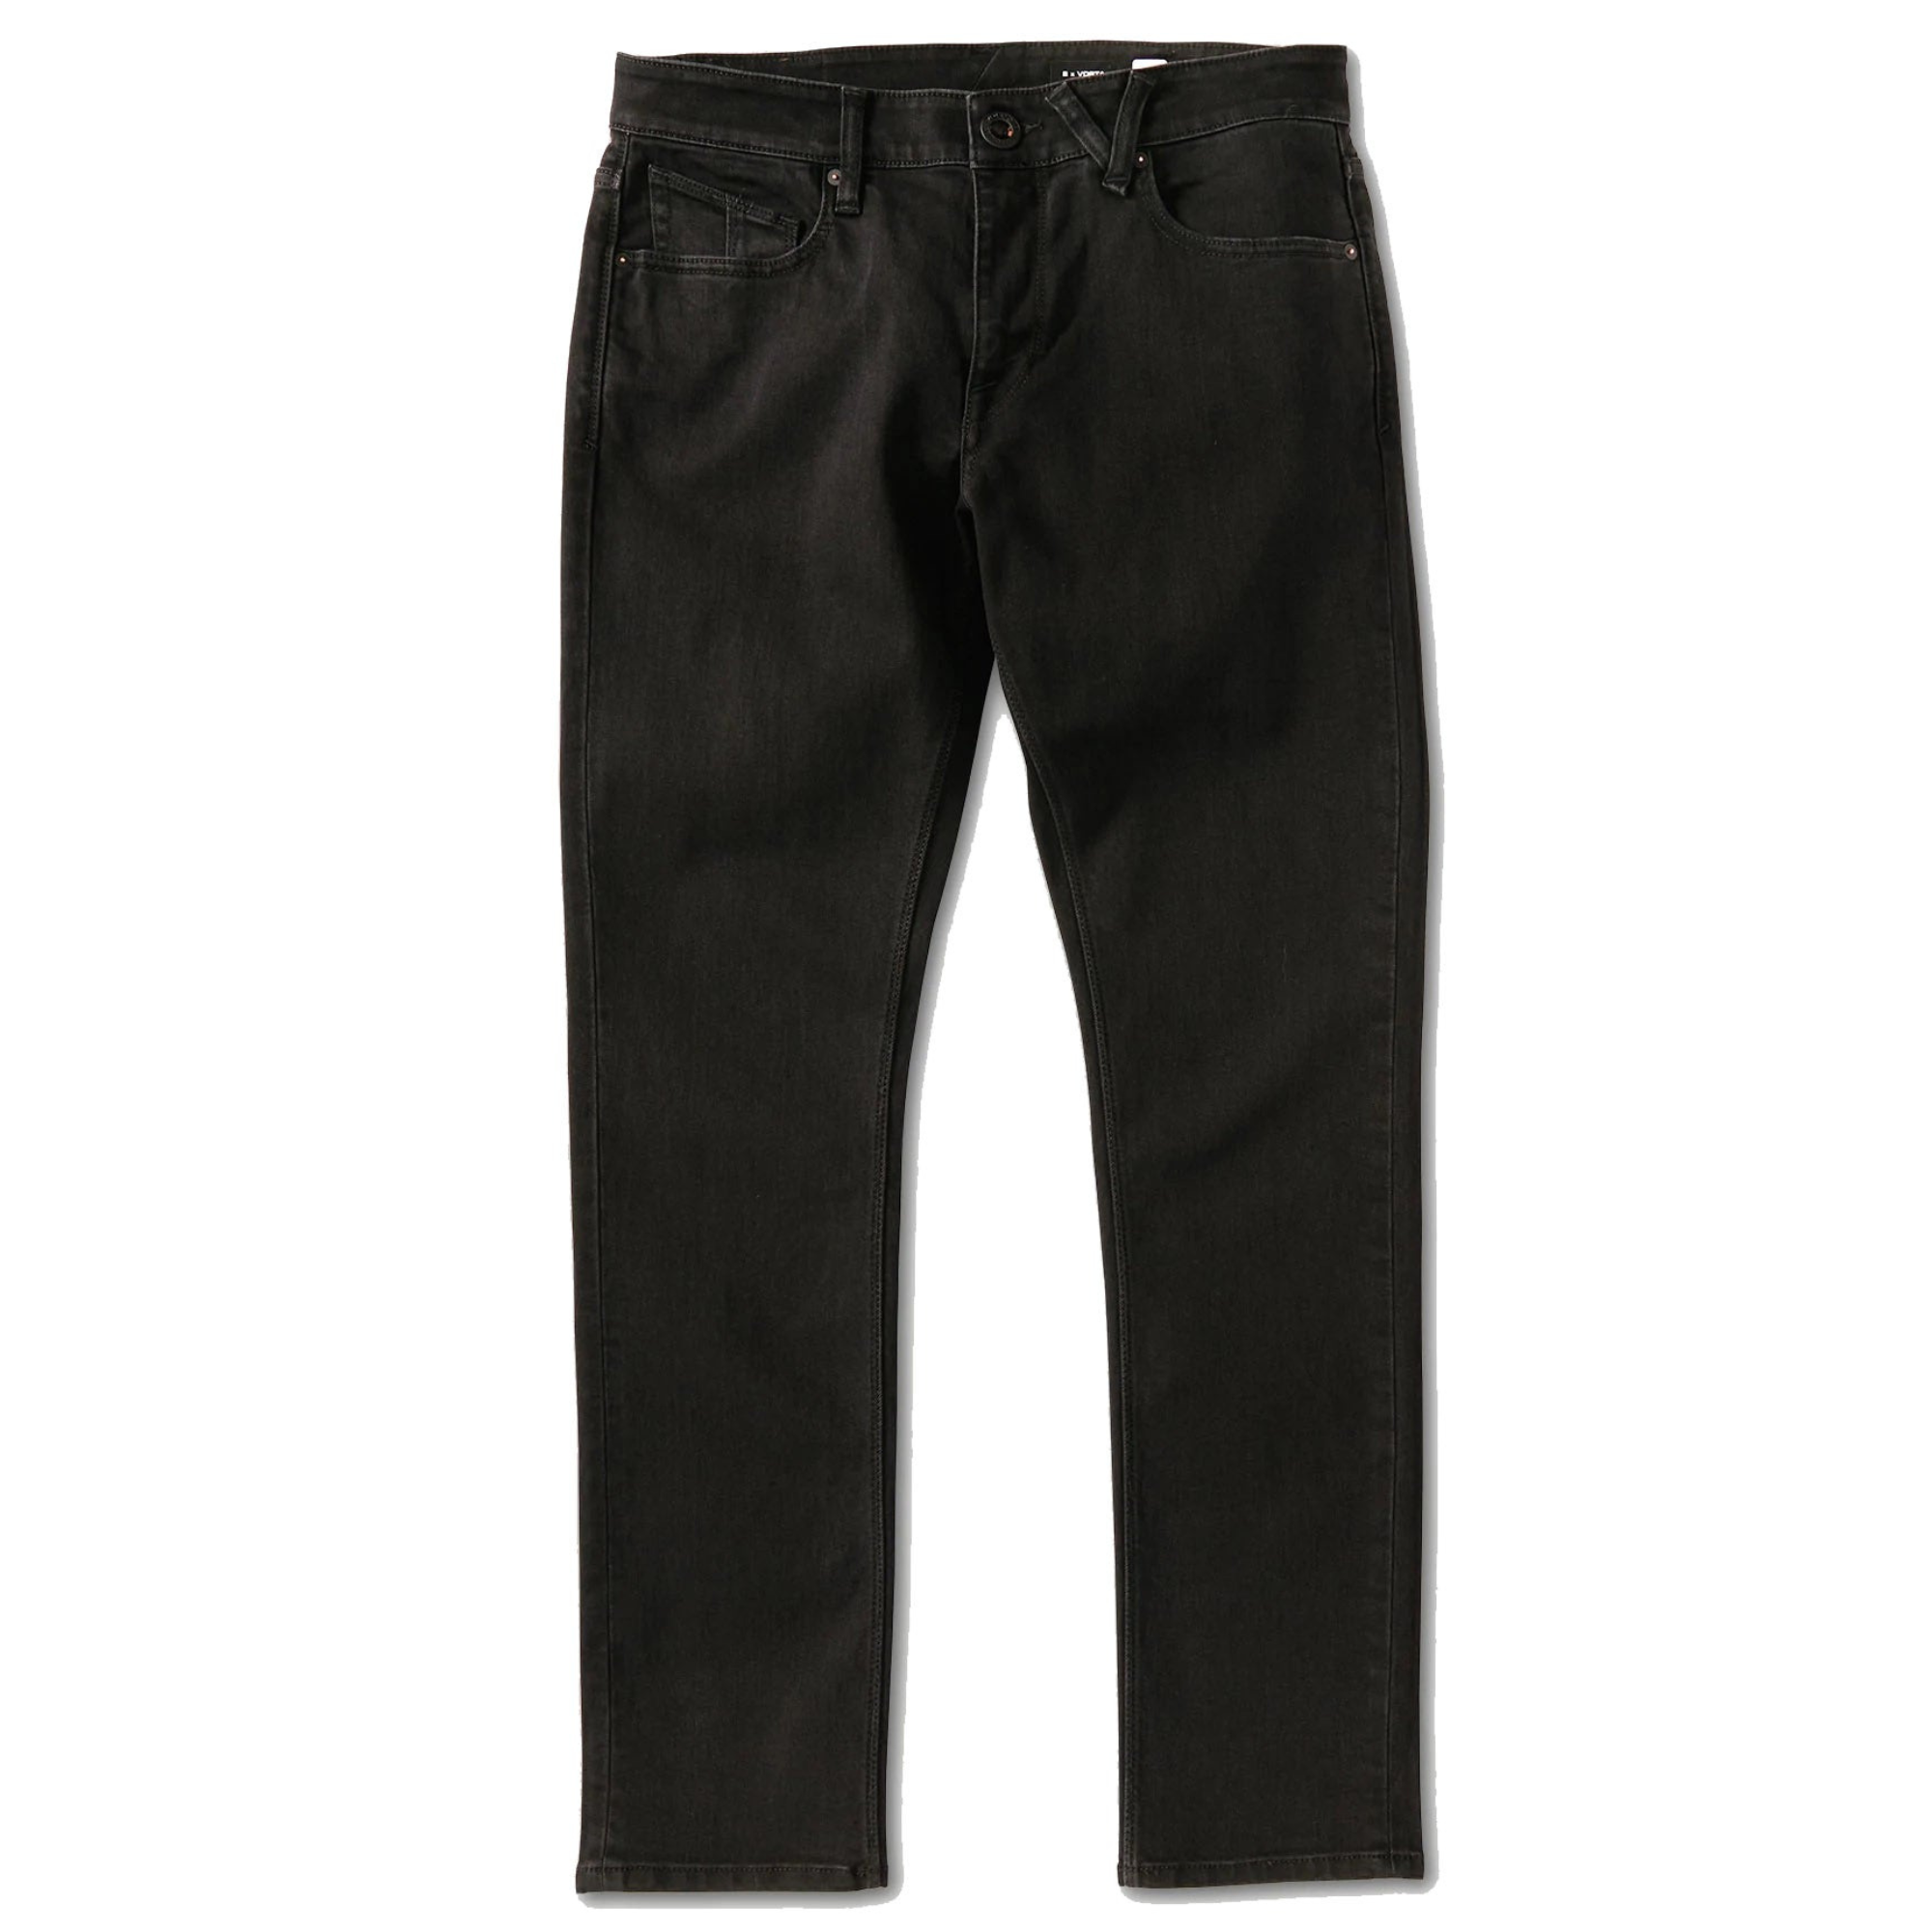 jeans-2-x-vorta-tapered-denim-black-out-bko